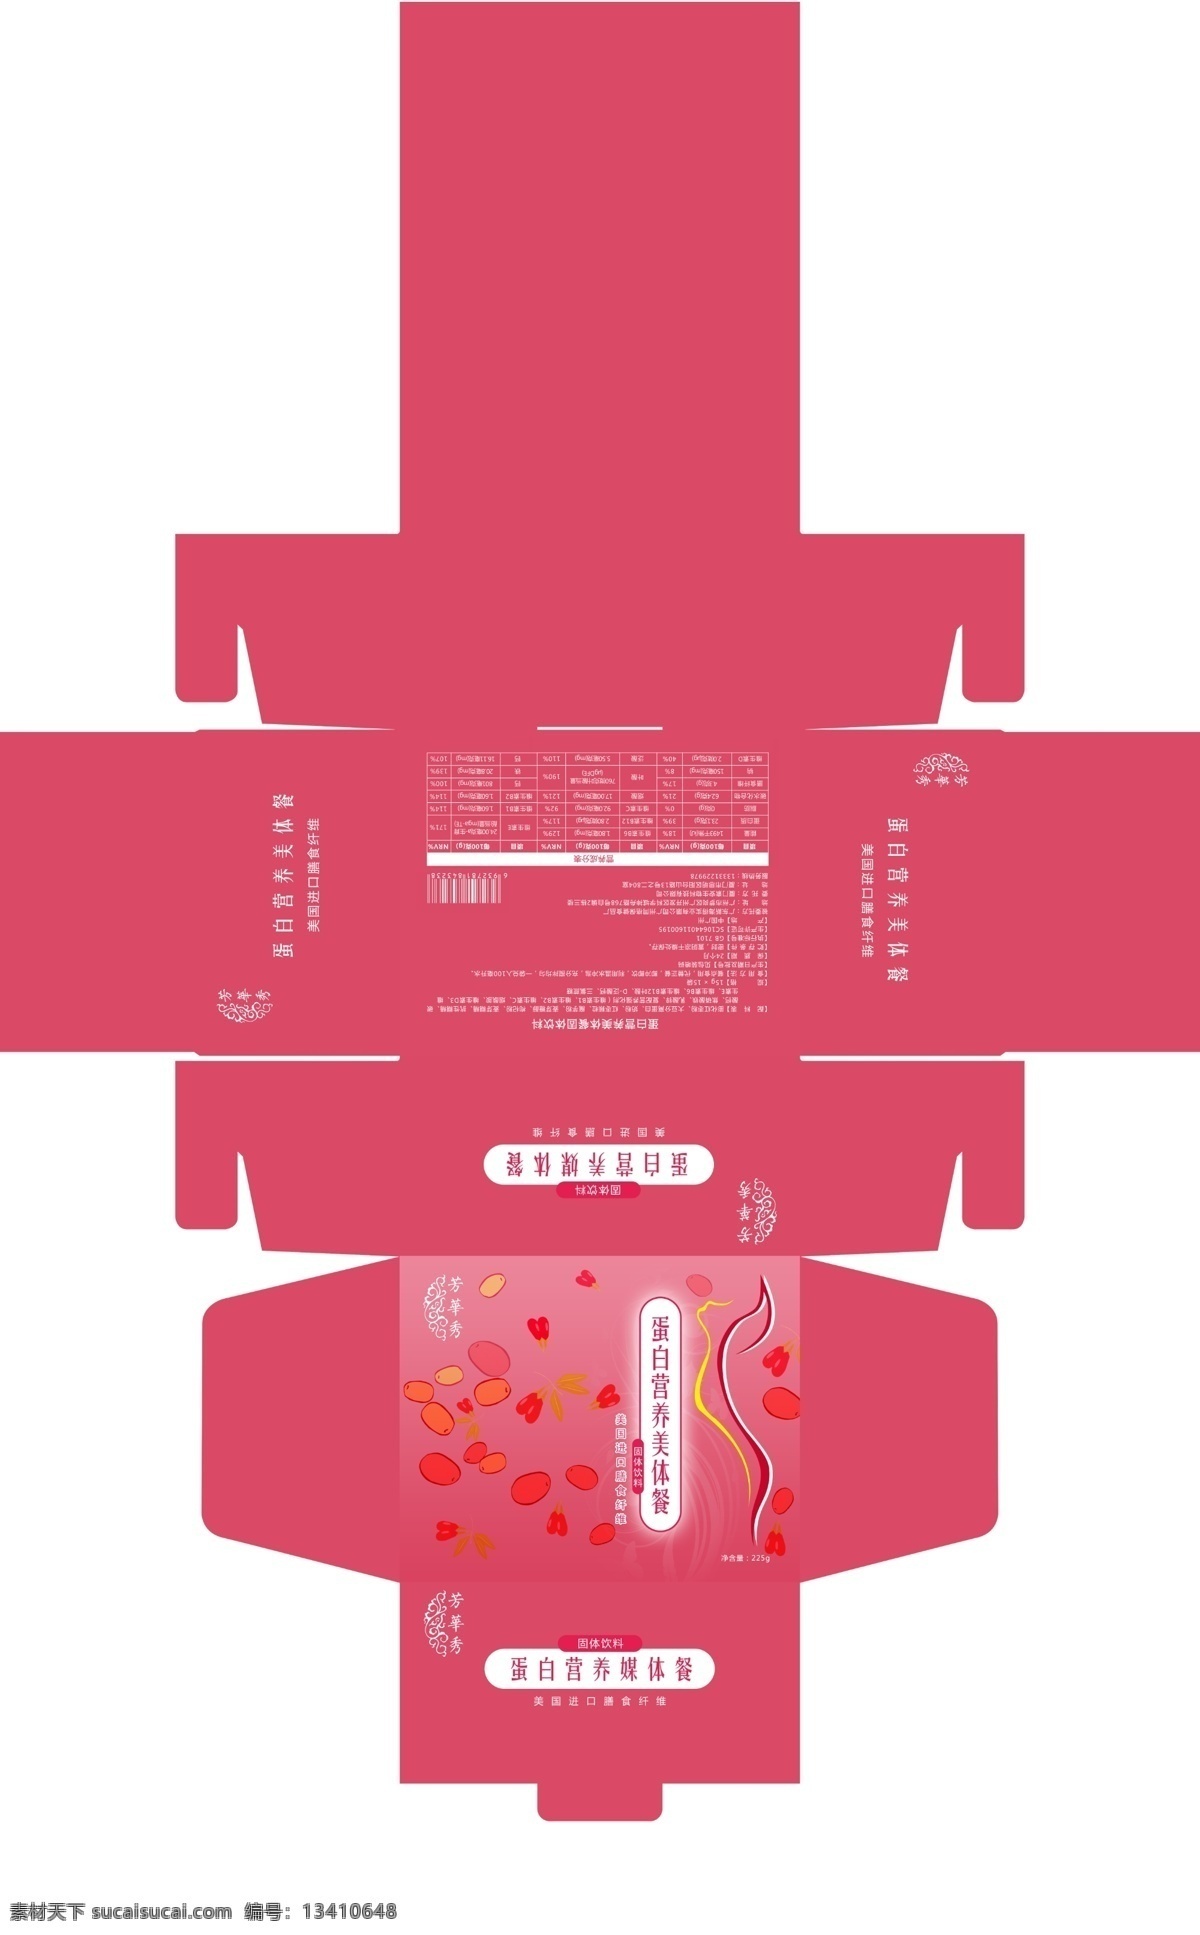 产品 包装盒 展开 图 展开图 红色 枸杞 食品 医疗 分层